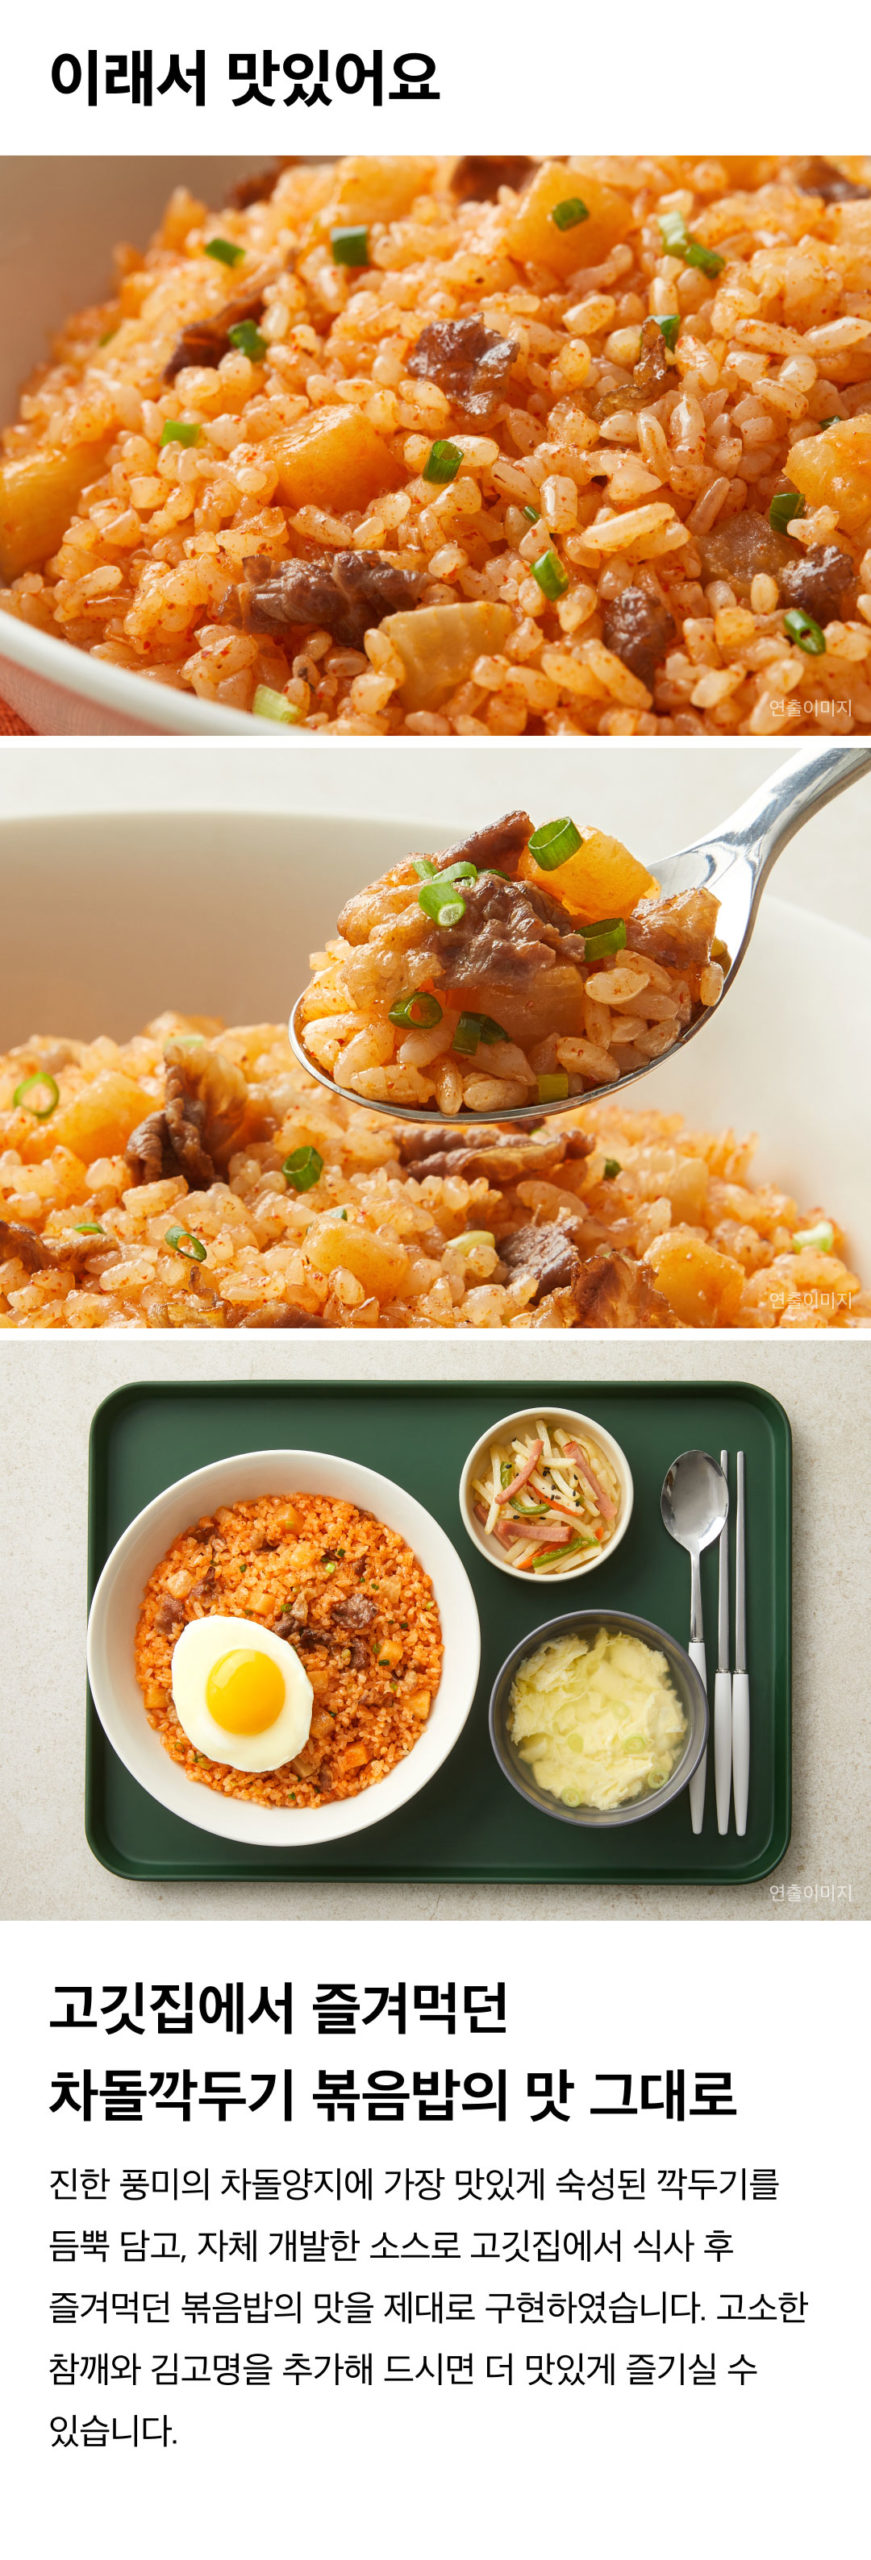 韓國食品-[CJ] Frozen Fried Rice with Beef Brisket and Kaktugi Sliced Radish Kimchi 410g